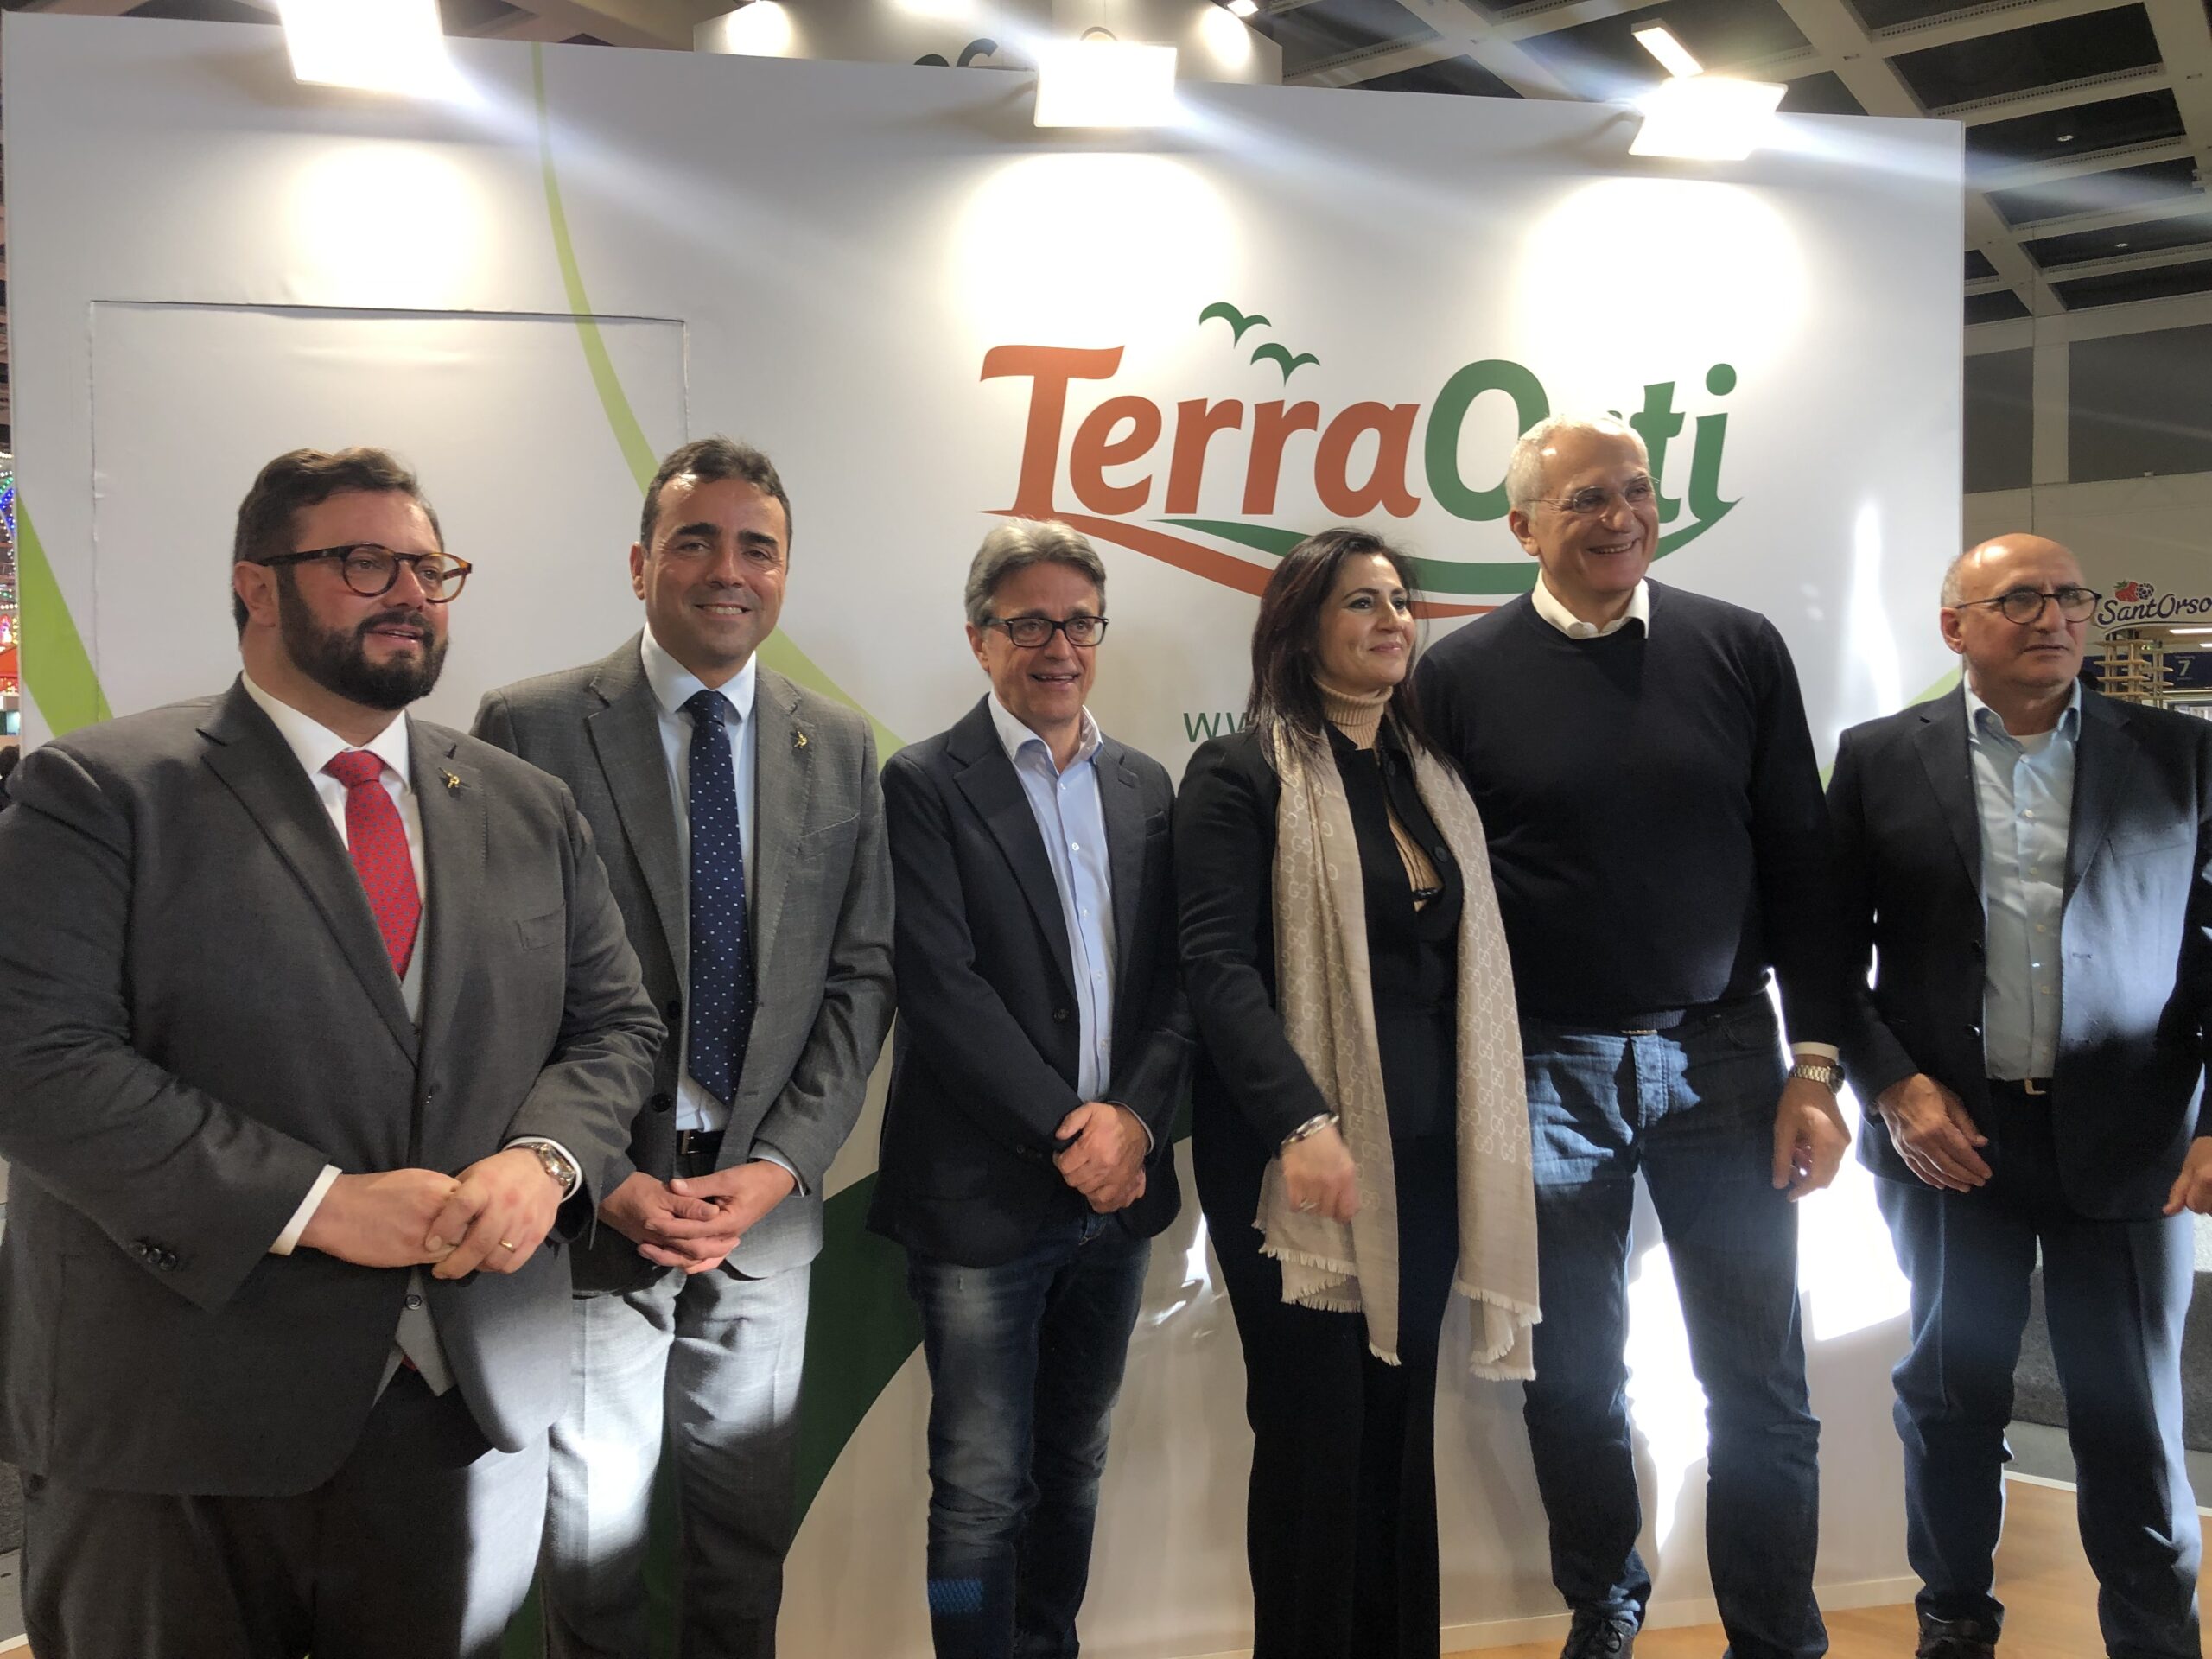 Istituzione italiane e Terra Orti: proficuo incontro a Berlino nella fiera  mondiale dell'ortofrutta - Italian Food News